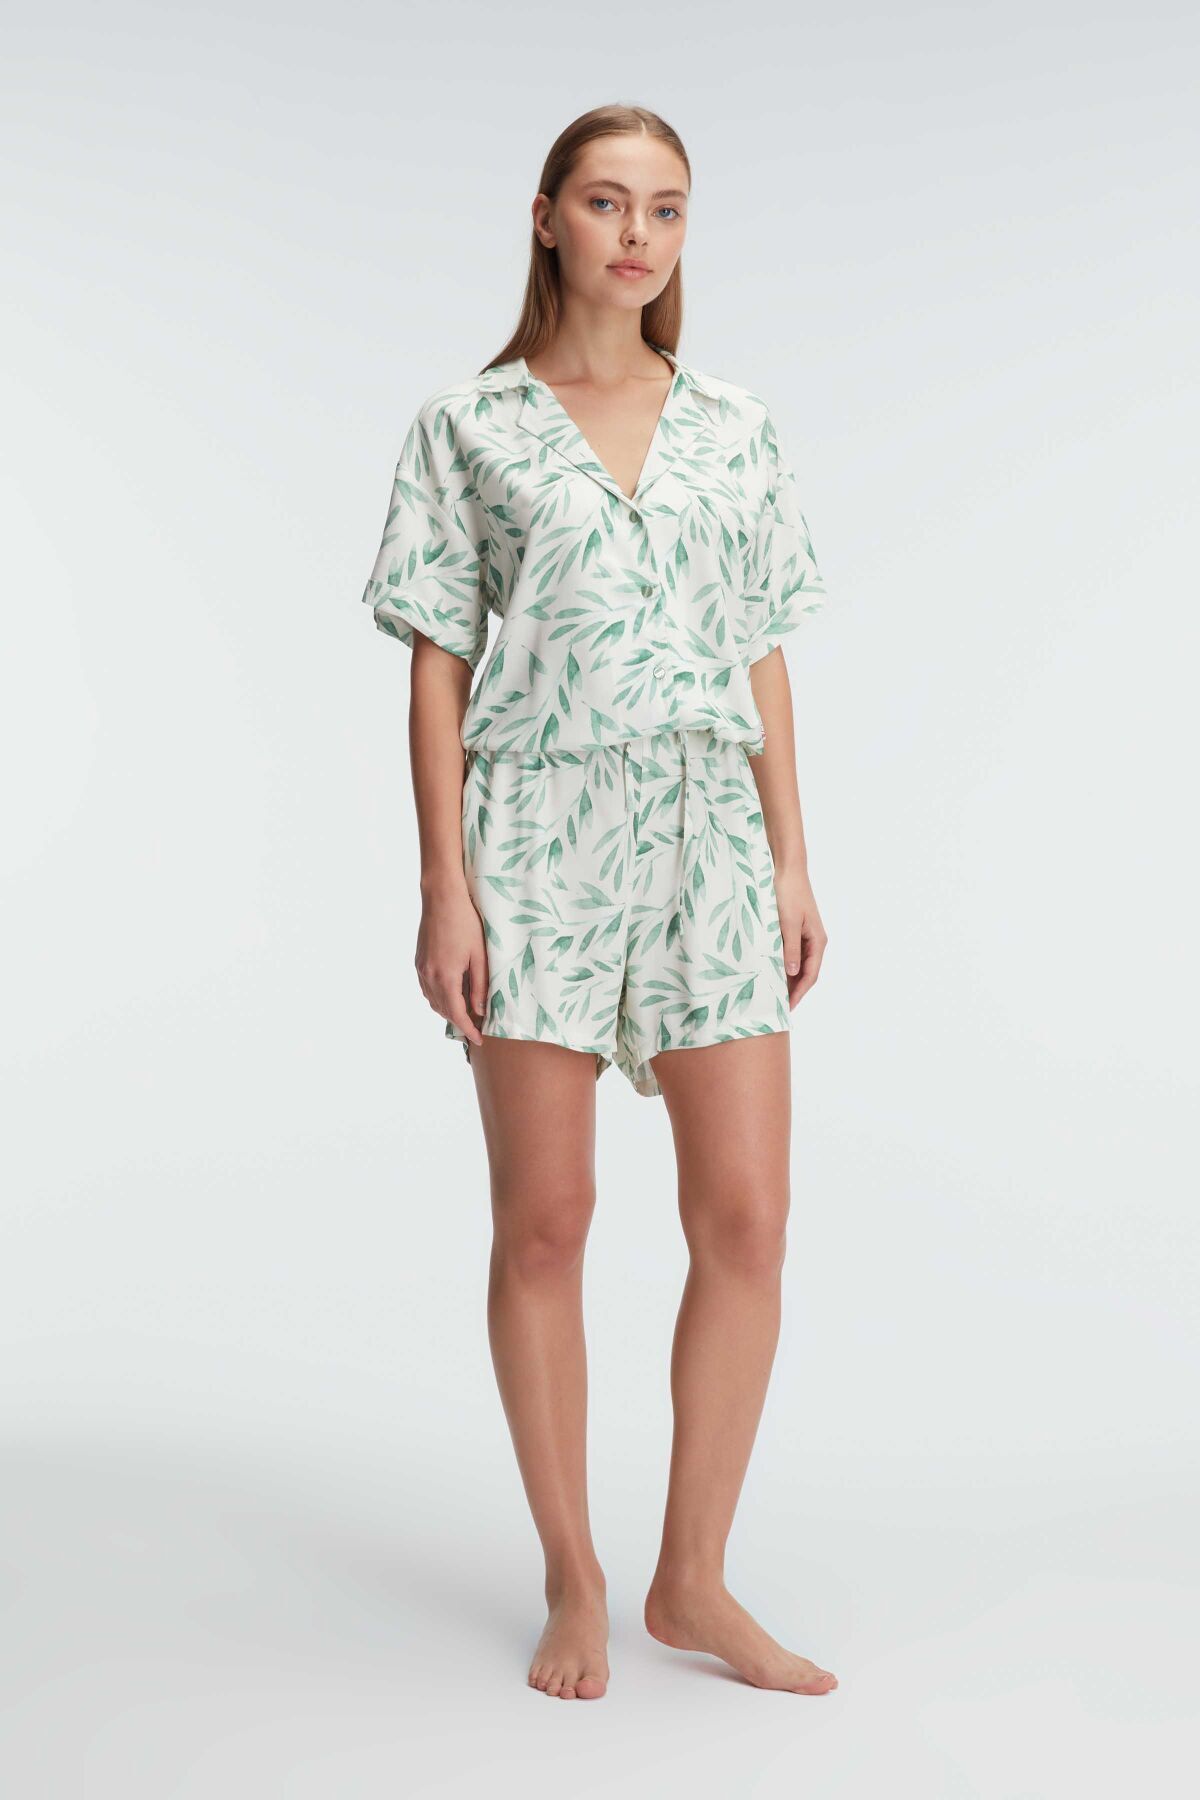 Anıl 9876 Ev Giyimi Kısa Kol V Yaka Kadın Viskon Tropikal Yazlık Örme Normal Bel Mini Pijama Takımı